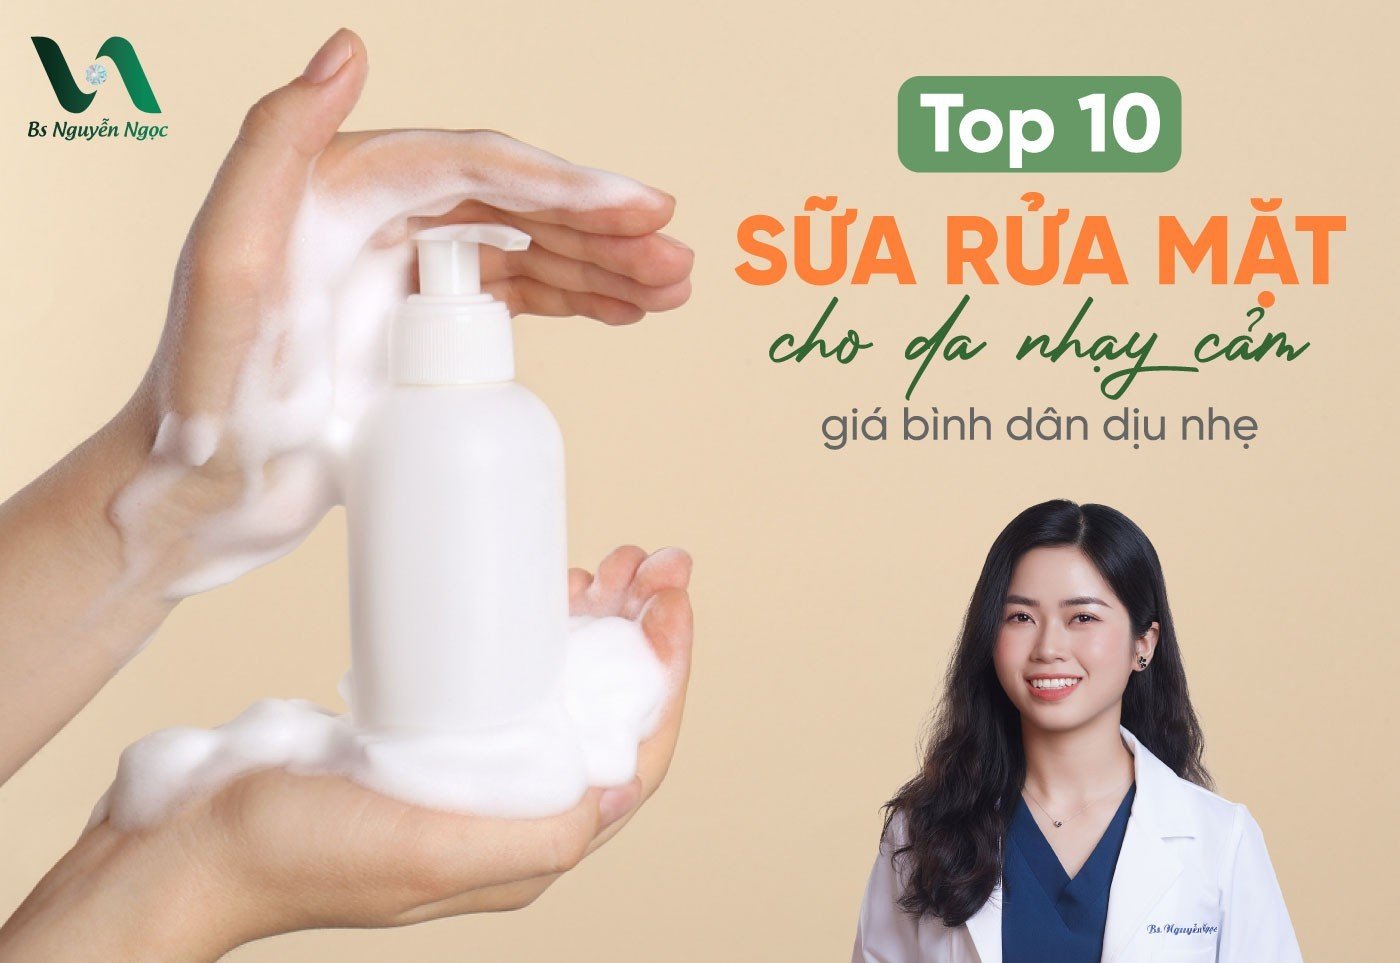 Top 10 sữa rửa mặt cho da nhạy cảm giá bình dân dịu nhẹ